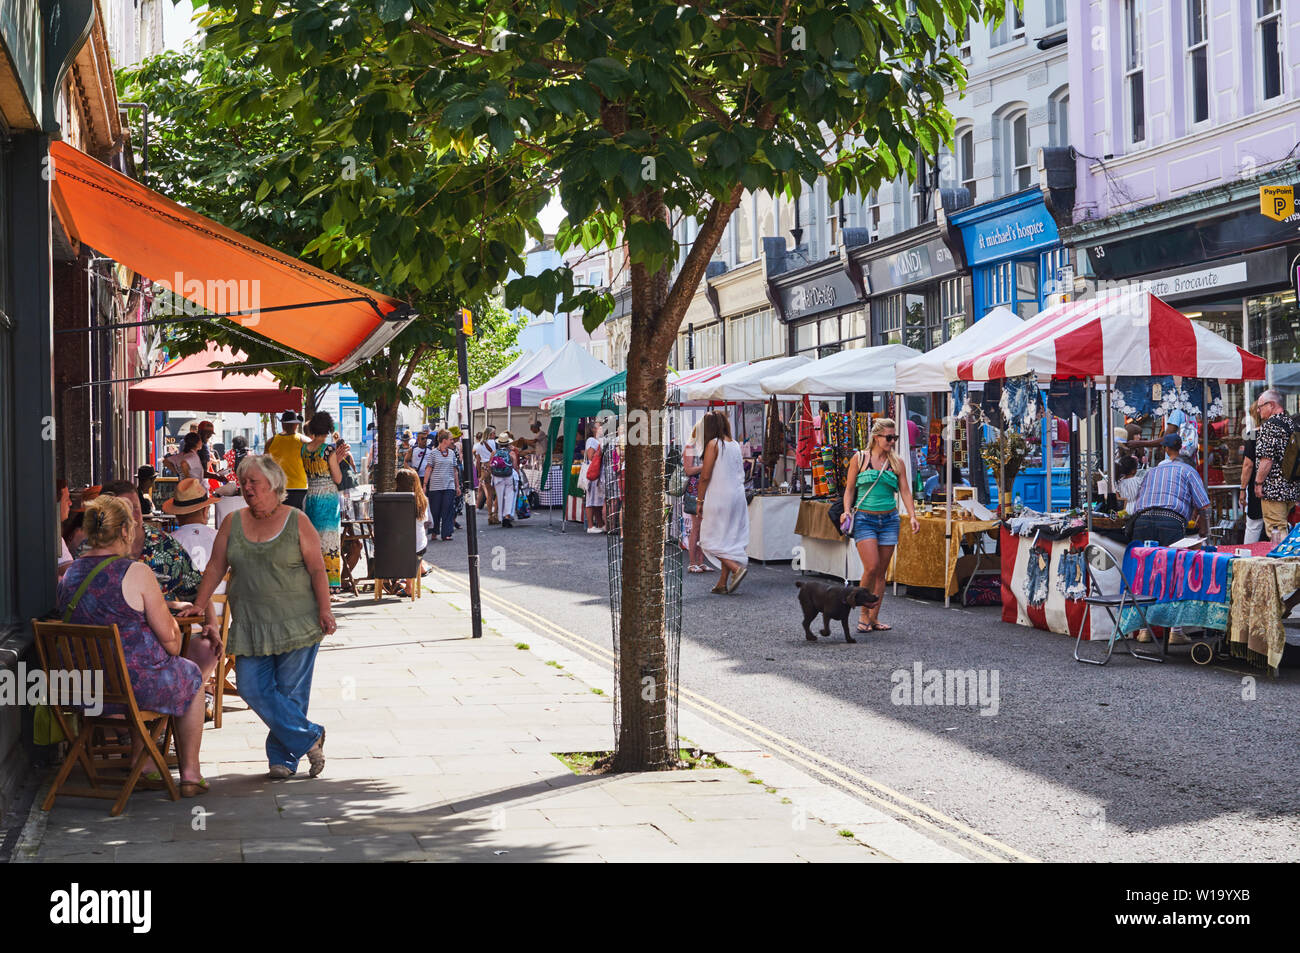 Le persone al di fuori di un caffè e la visita di Kings Road street market, nella cittadina di St Leonards on Sea, East Sussex, Regno Unito Foto Stock